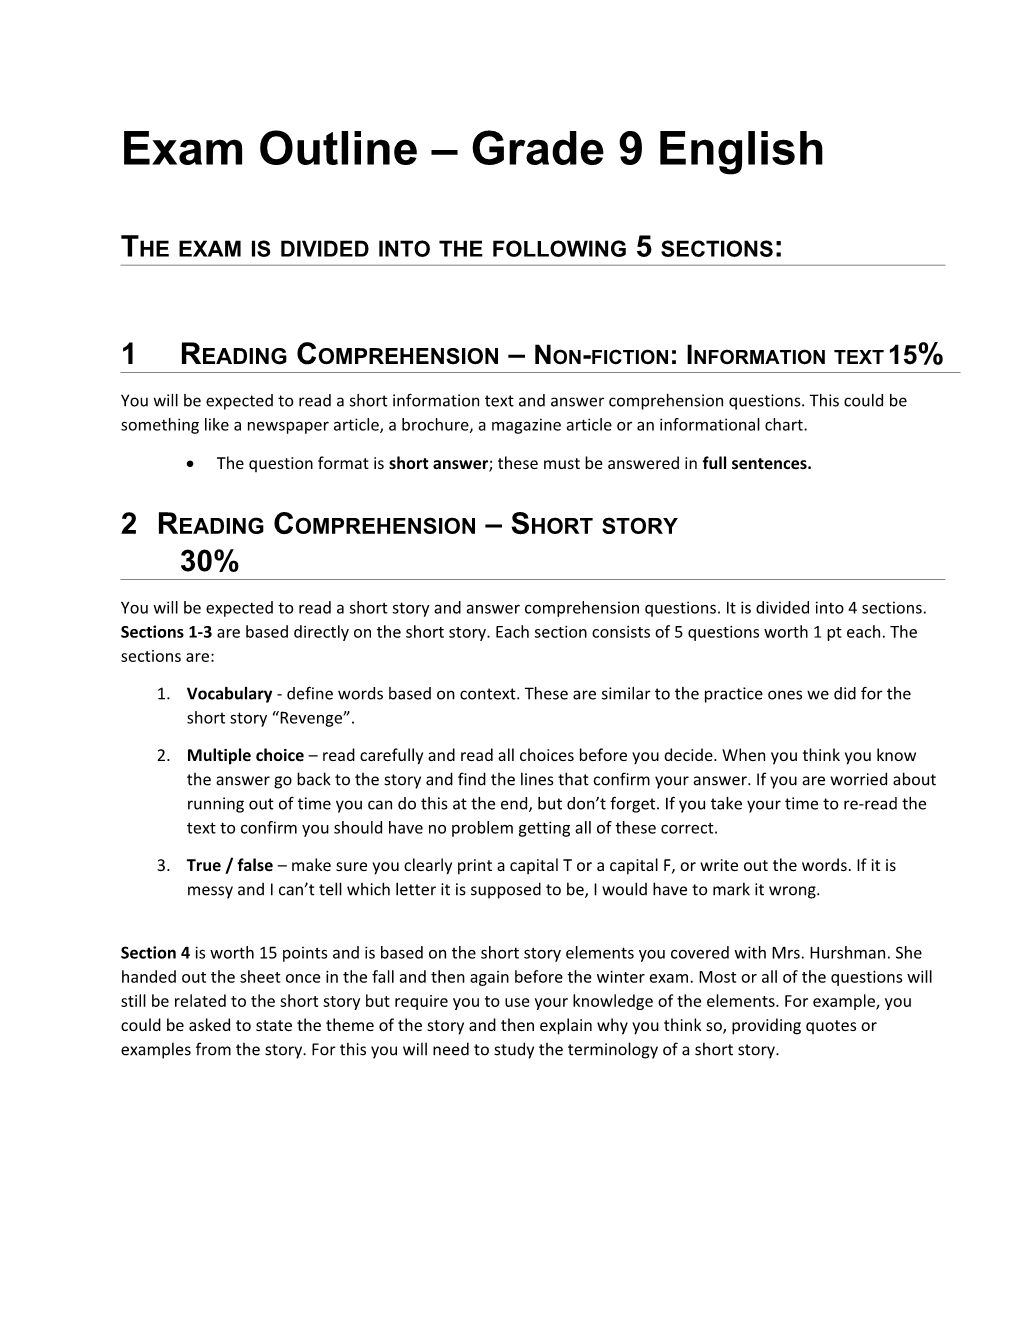 Exam Outline Grade 9